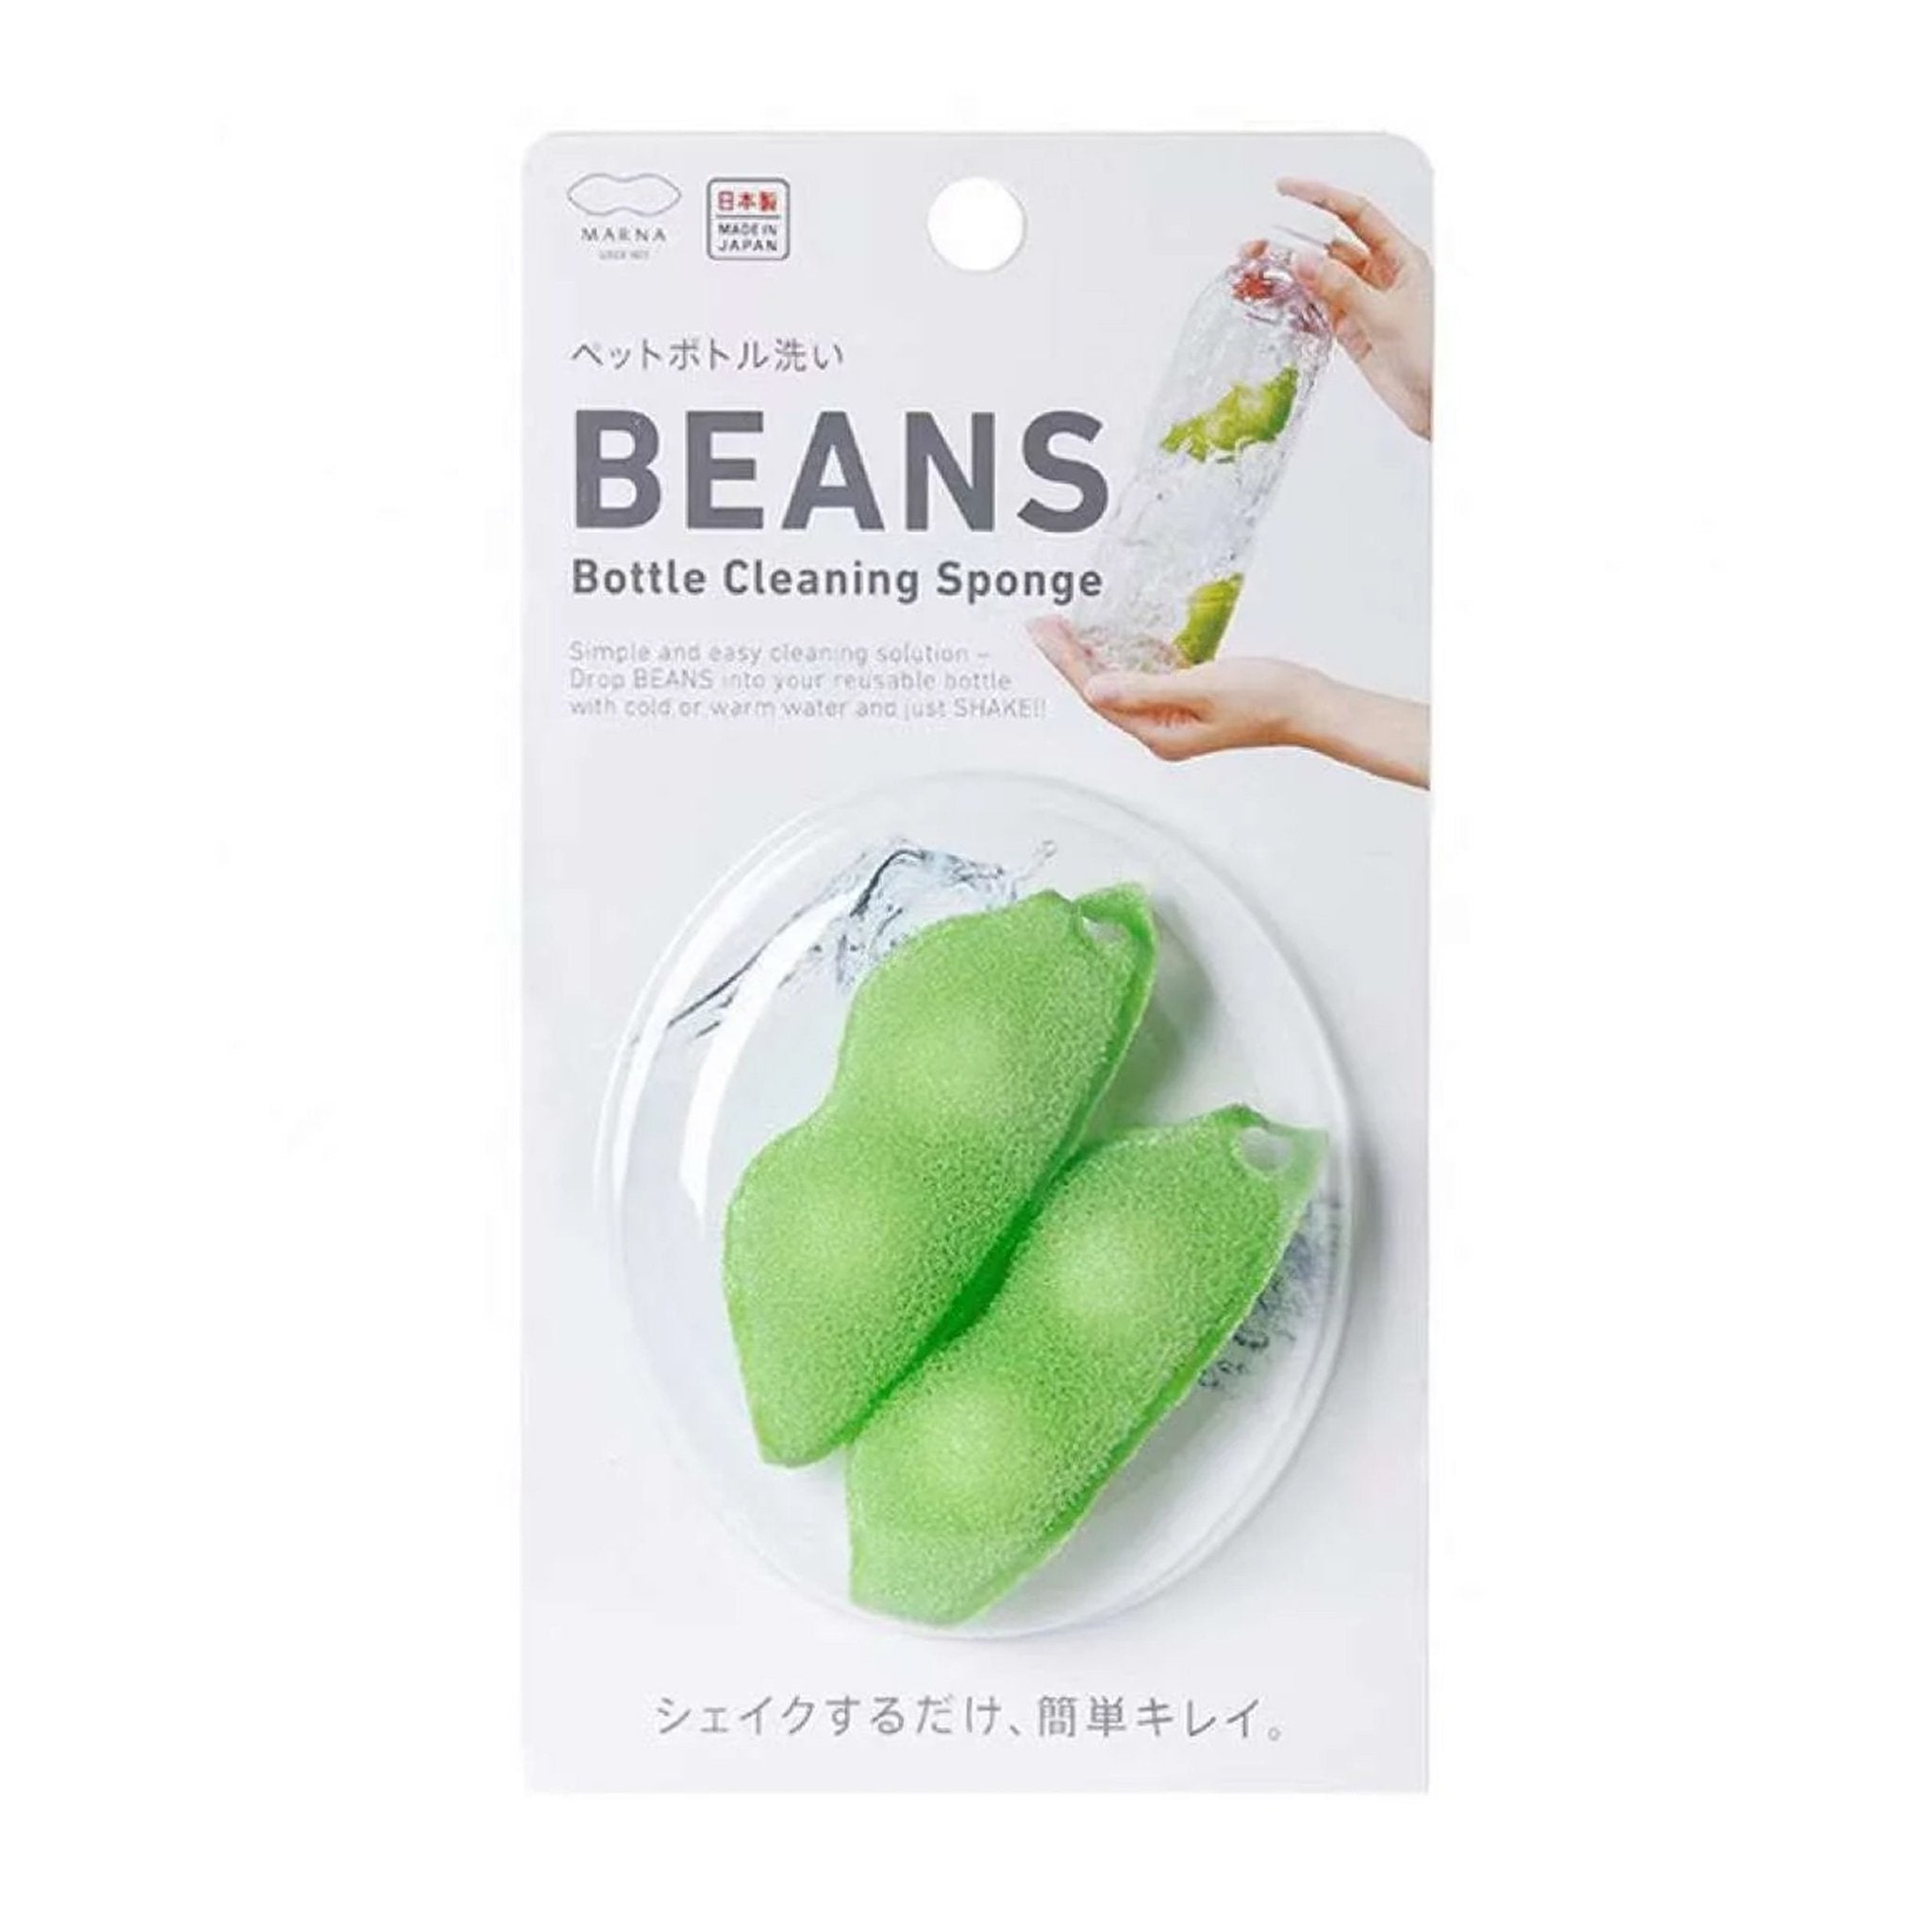 MARNA PET Bottle Wash Beans 2Pcs Home & Garden CA$6.50 –